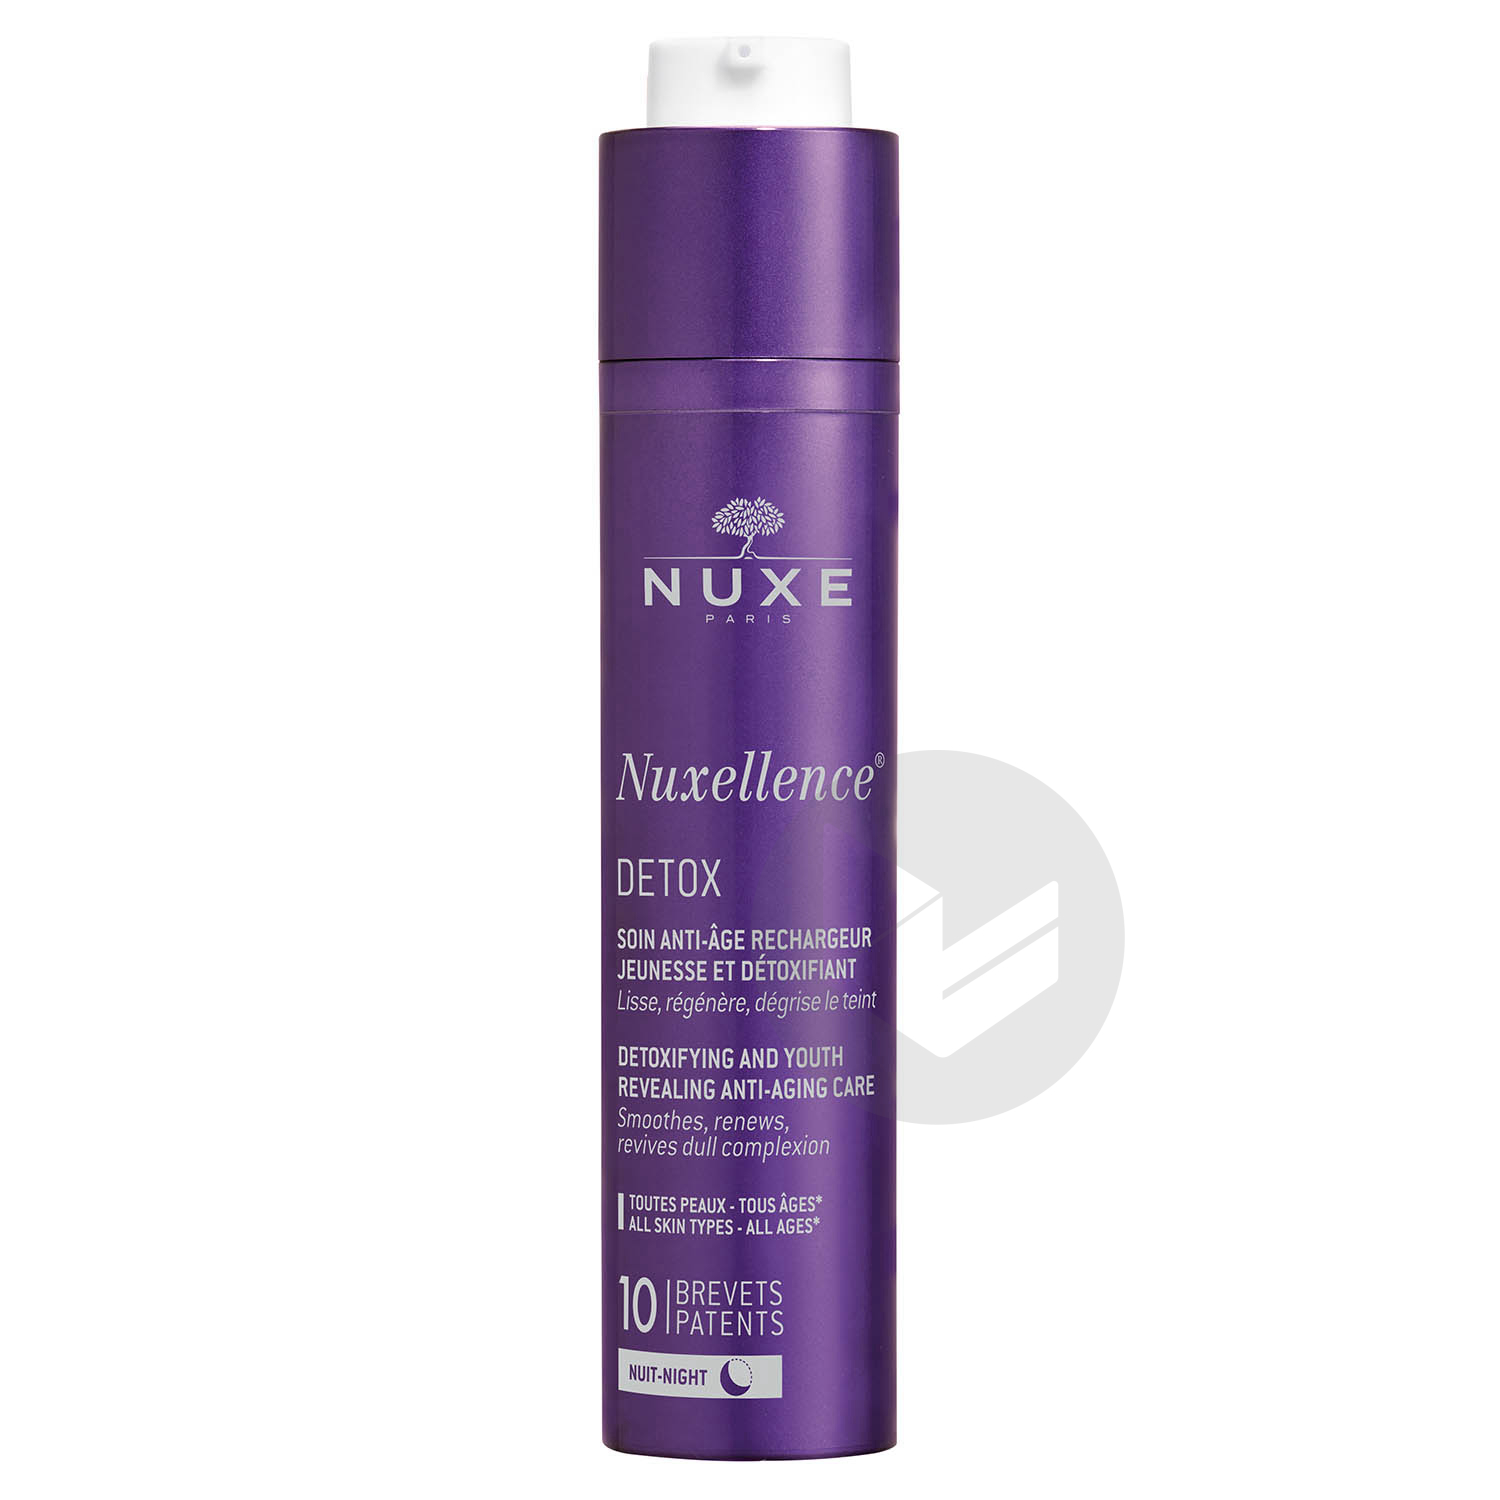 Nuxellence® detox - soin anti-âge rechargeur jeunesse et détoxifiant